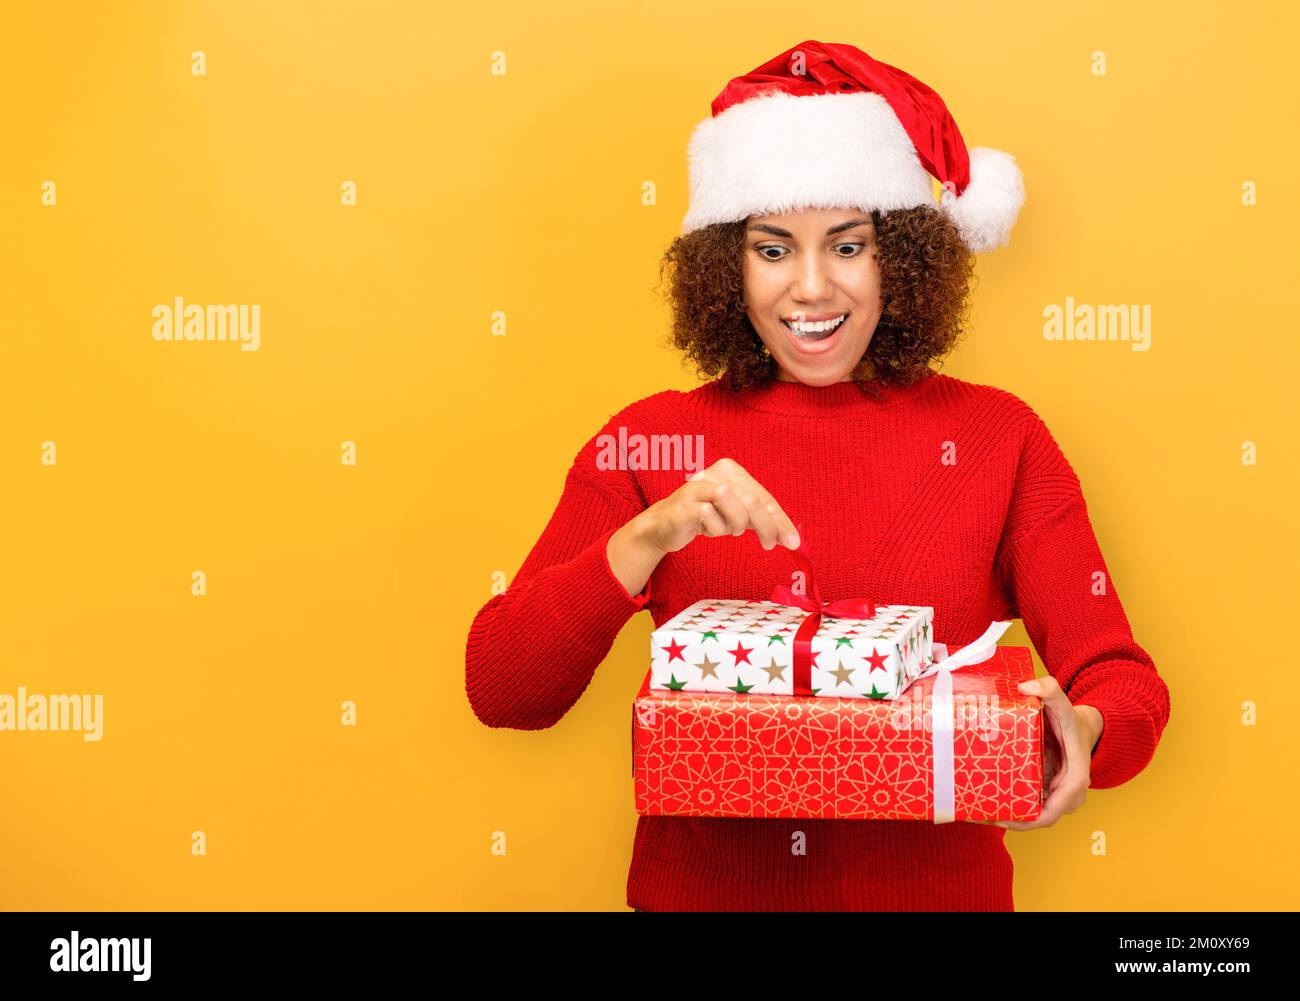 Angenehm aufgeregte glückliche Frau hält ein weihnachtsgeschenk in Händen. Frau mit weihnachtsmann-Hut auf orangefarbenem Hintergrund, lächelnd Stockfoto